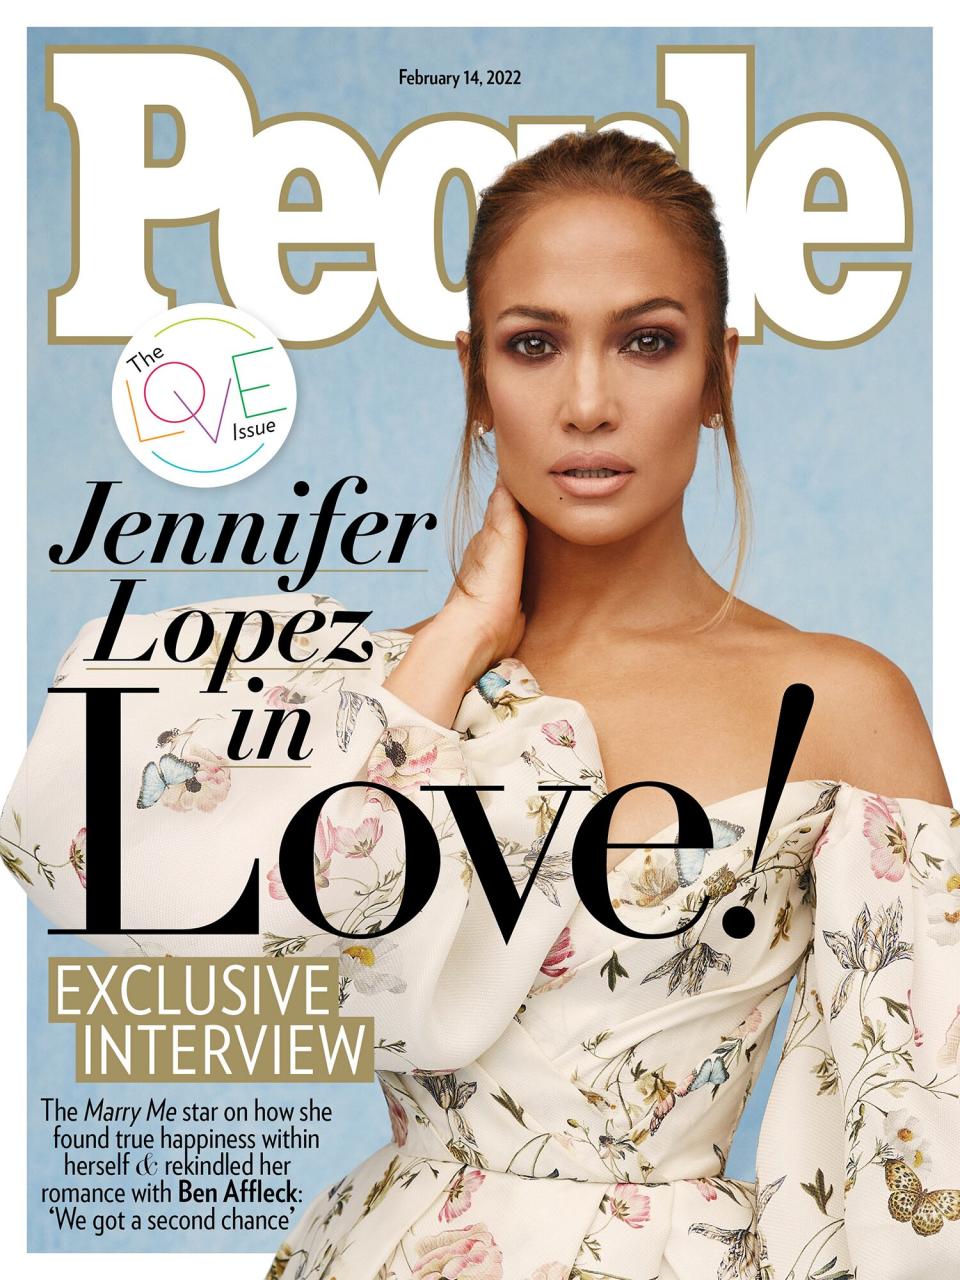 Jennifer Lopez cover rollout